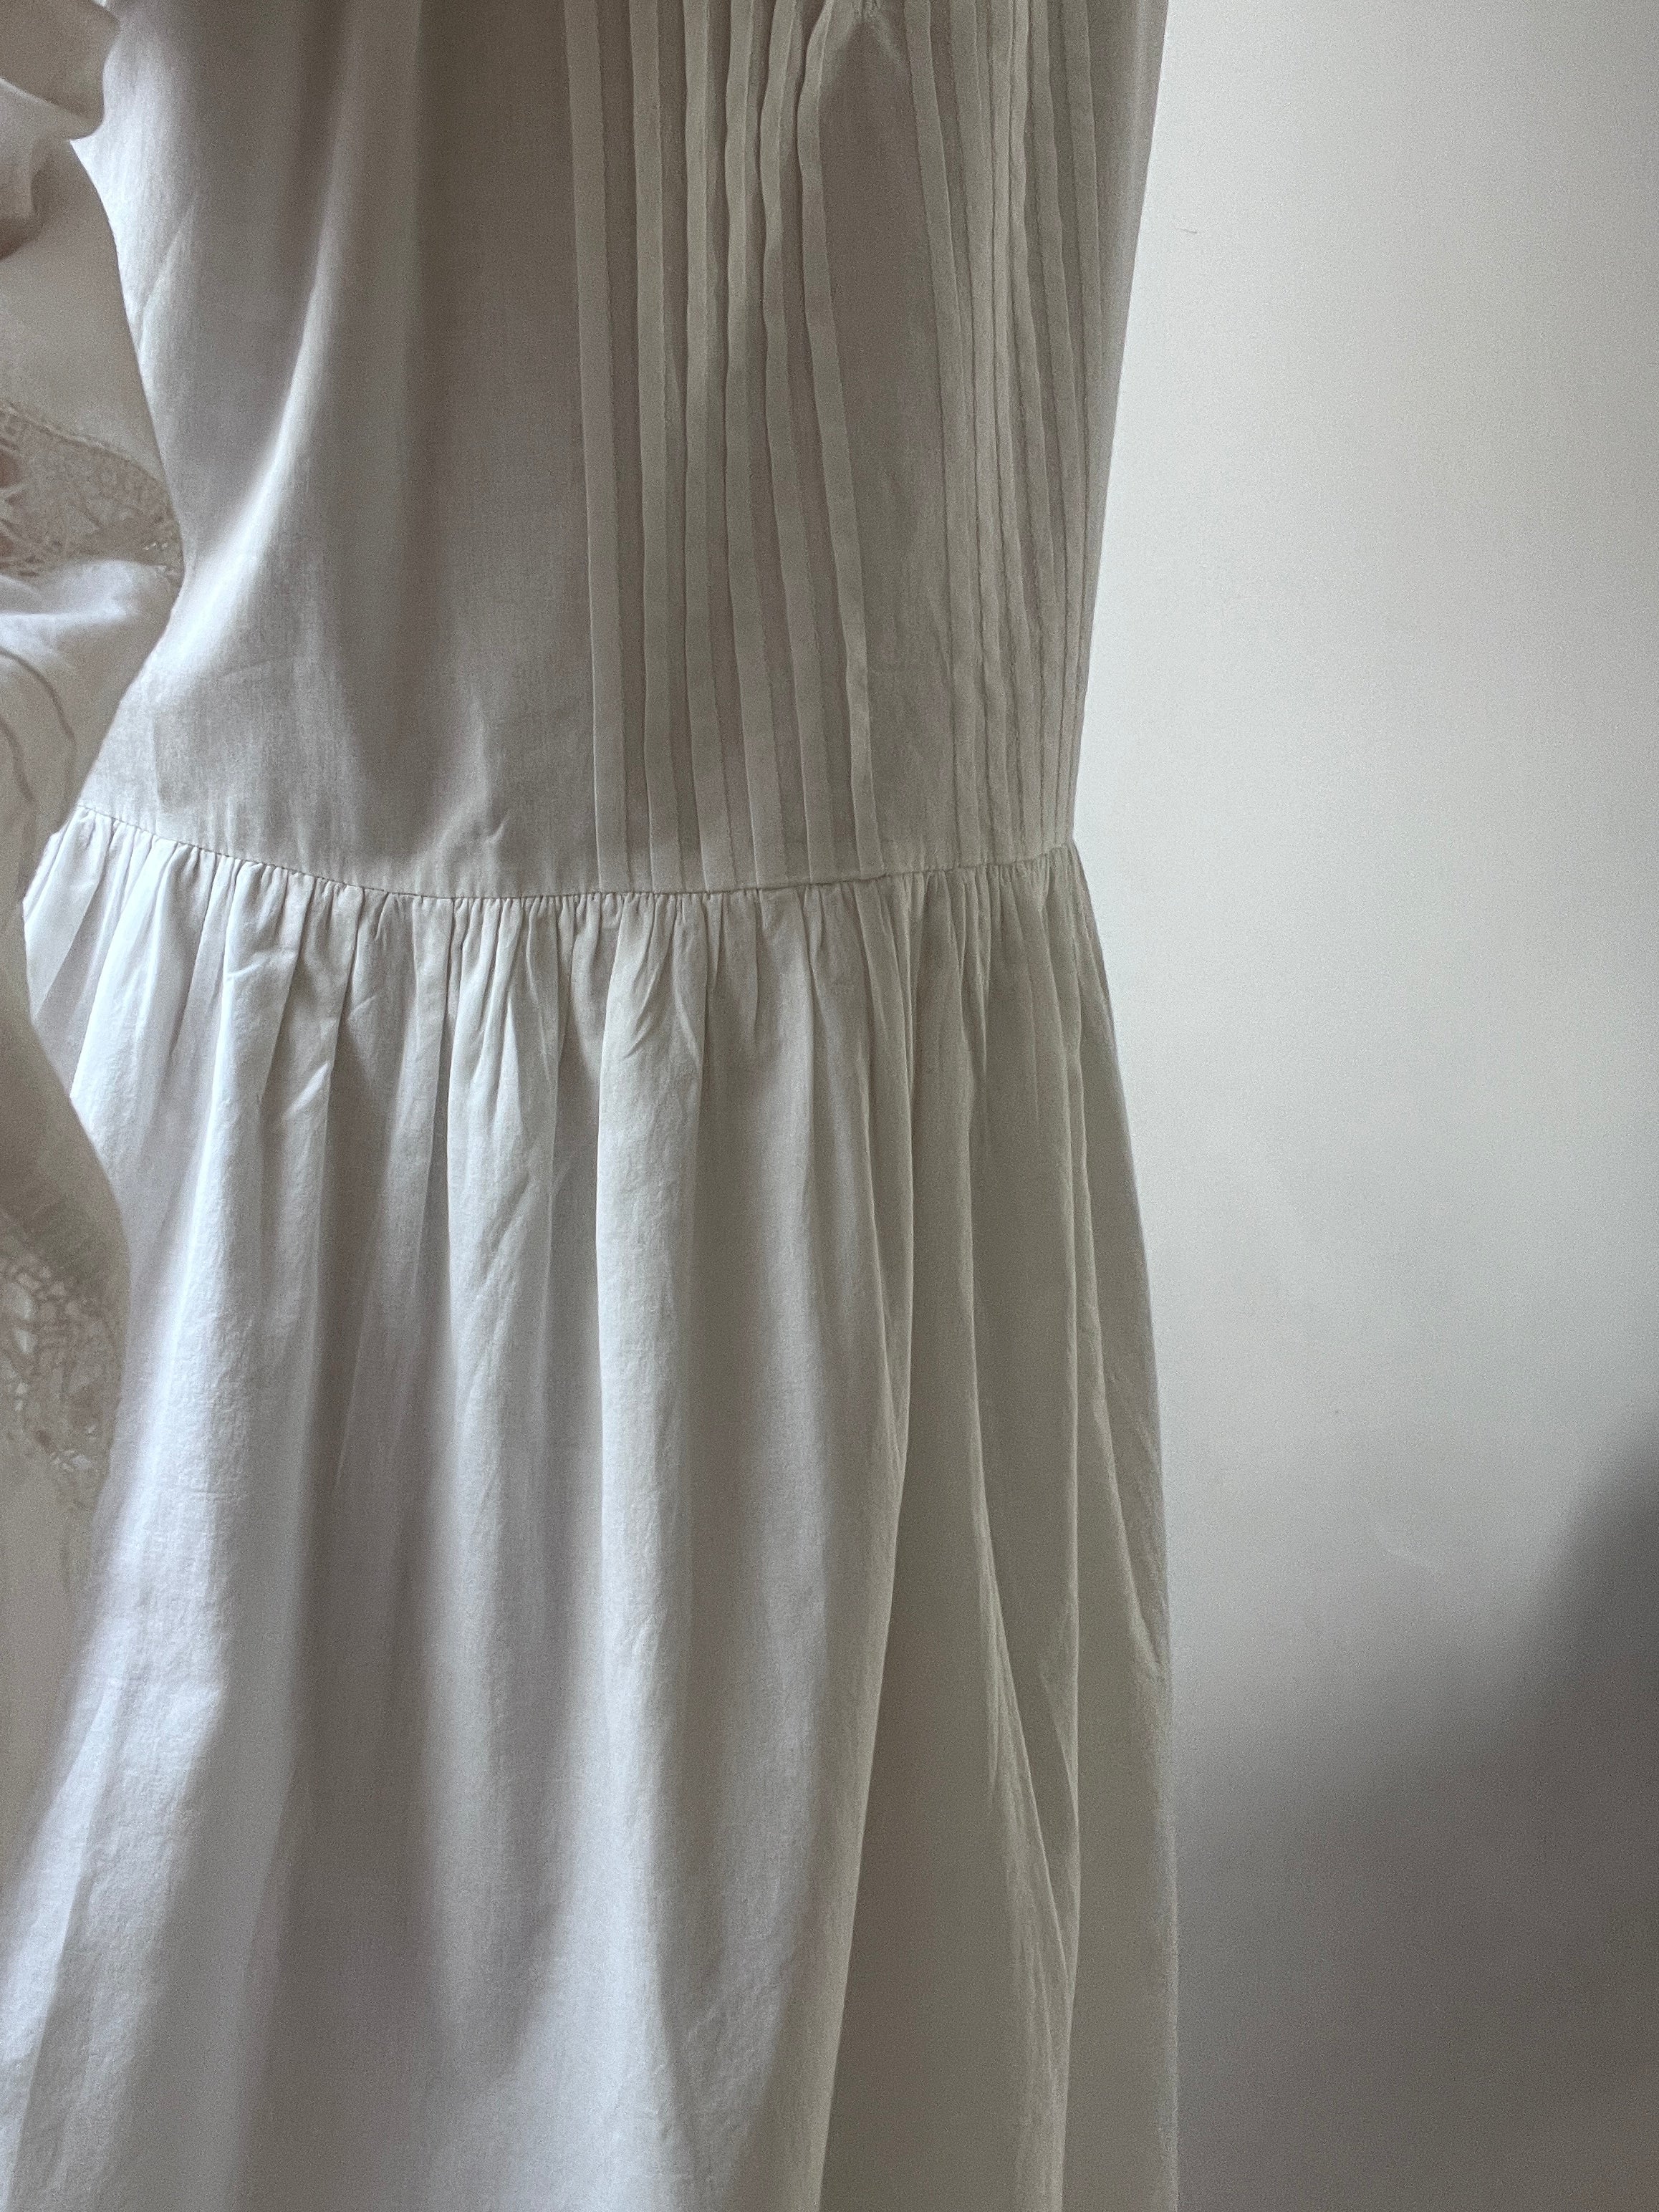 Skall Studio Dresses Skall Studio Olive Dress White